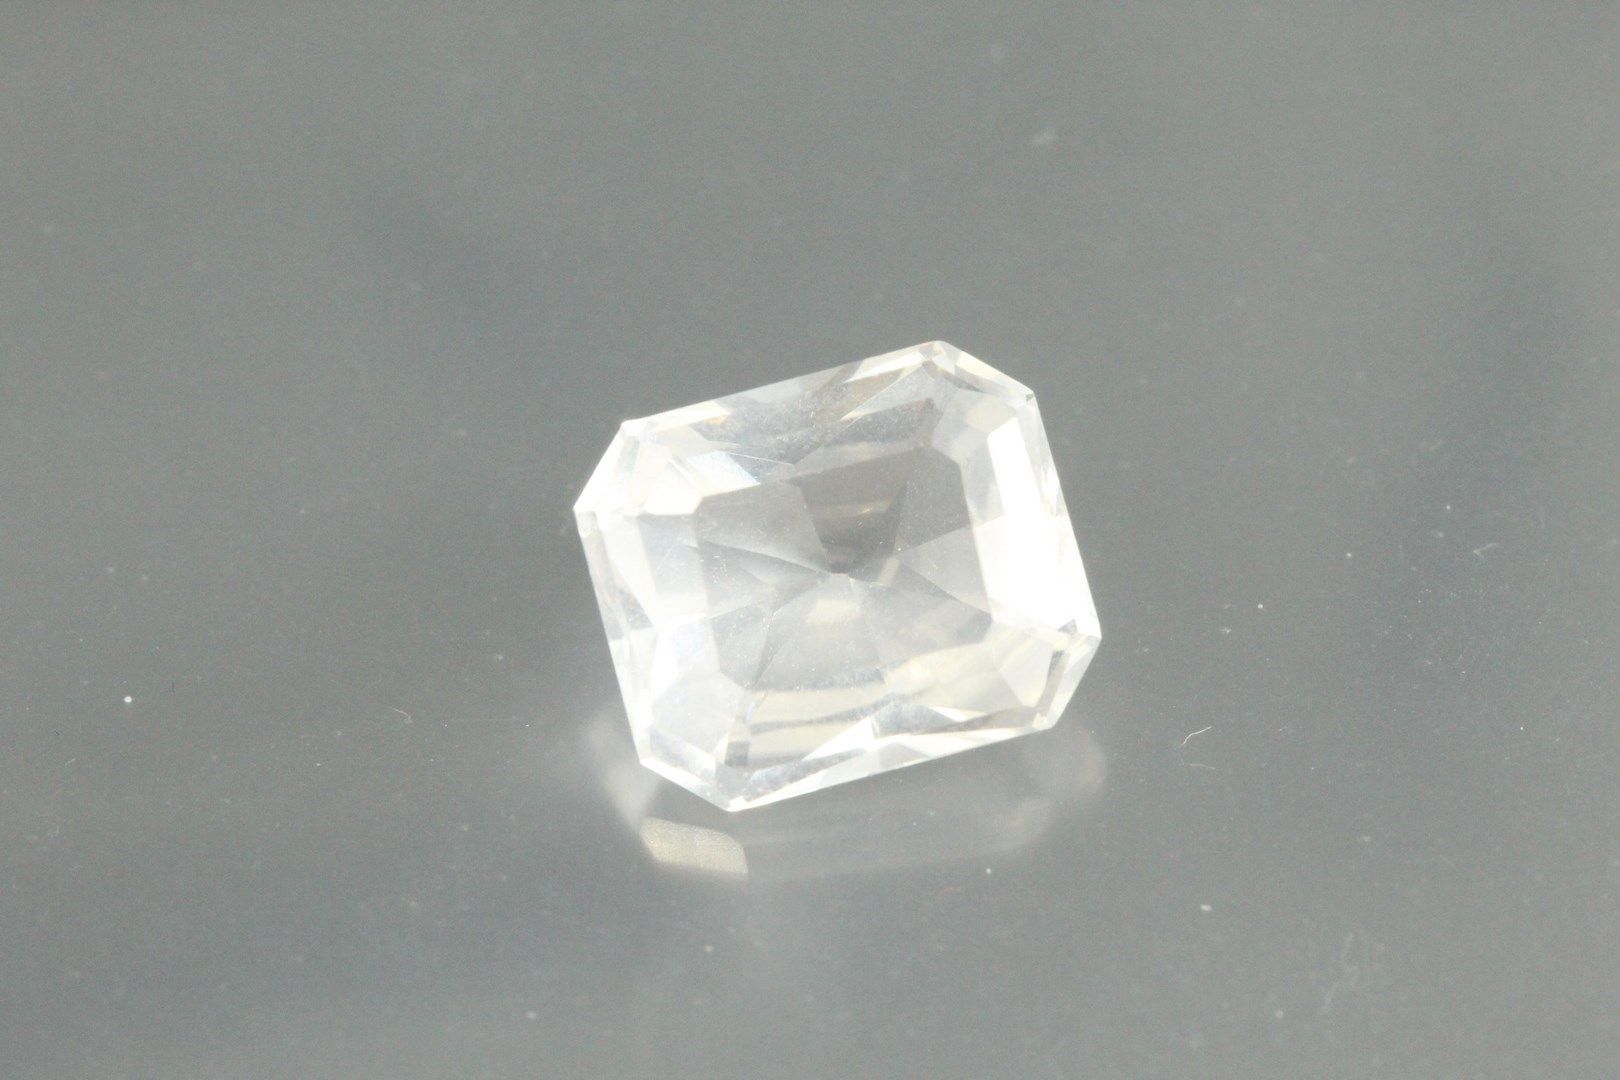 Null Strahlendes Bergkristall auf Papier.

Brasilien.

Gewicht: 4, 68 ct.